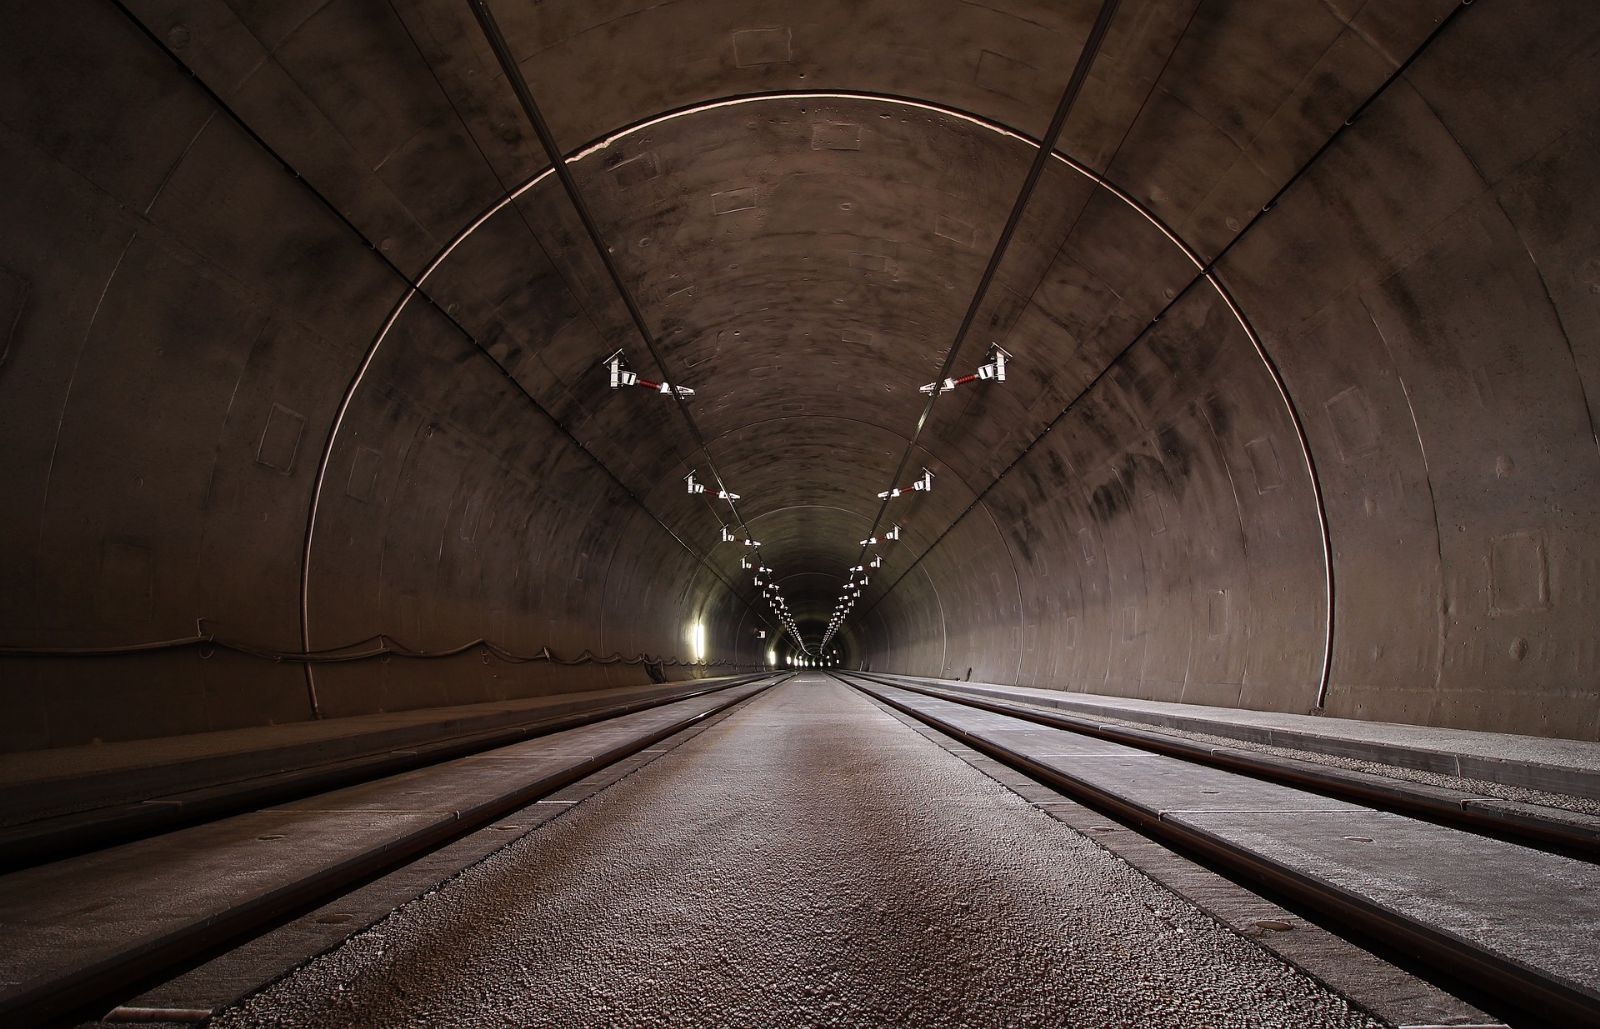 Žádosti o schválení uzavírky tunelů v Pisárkách mimo prázdniny město nevyhoví